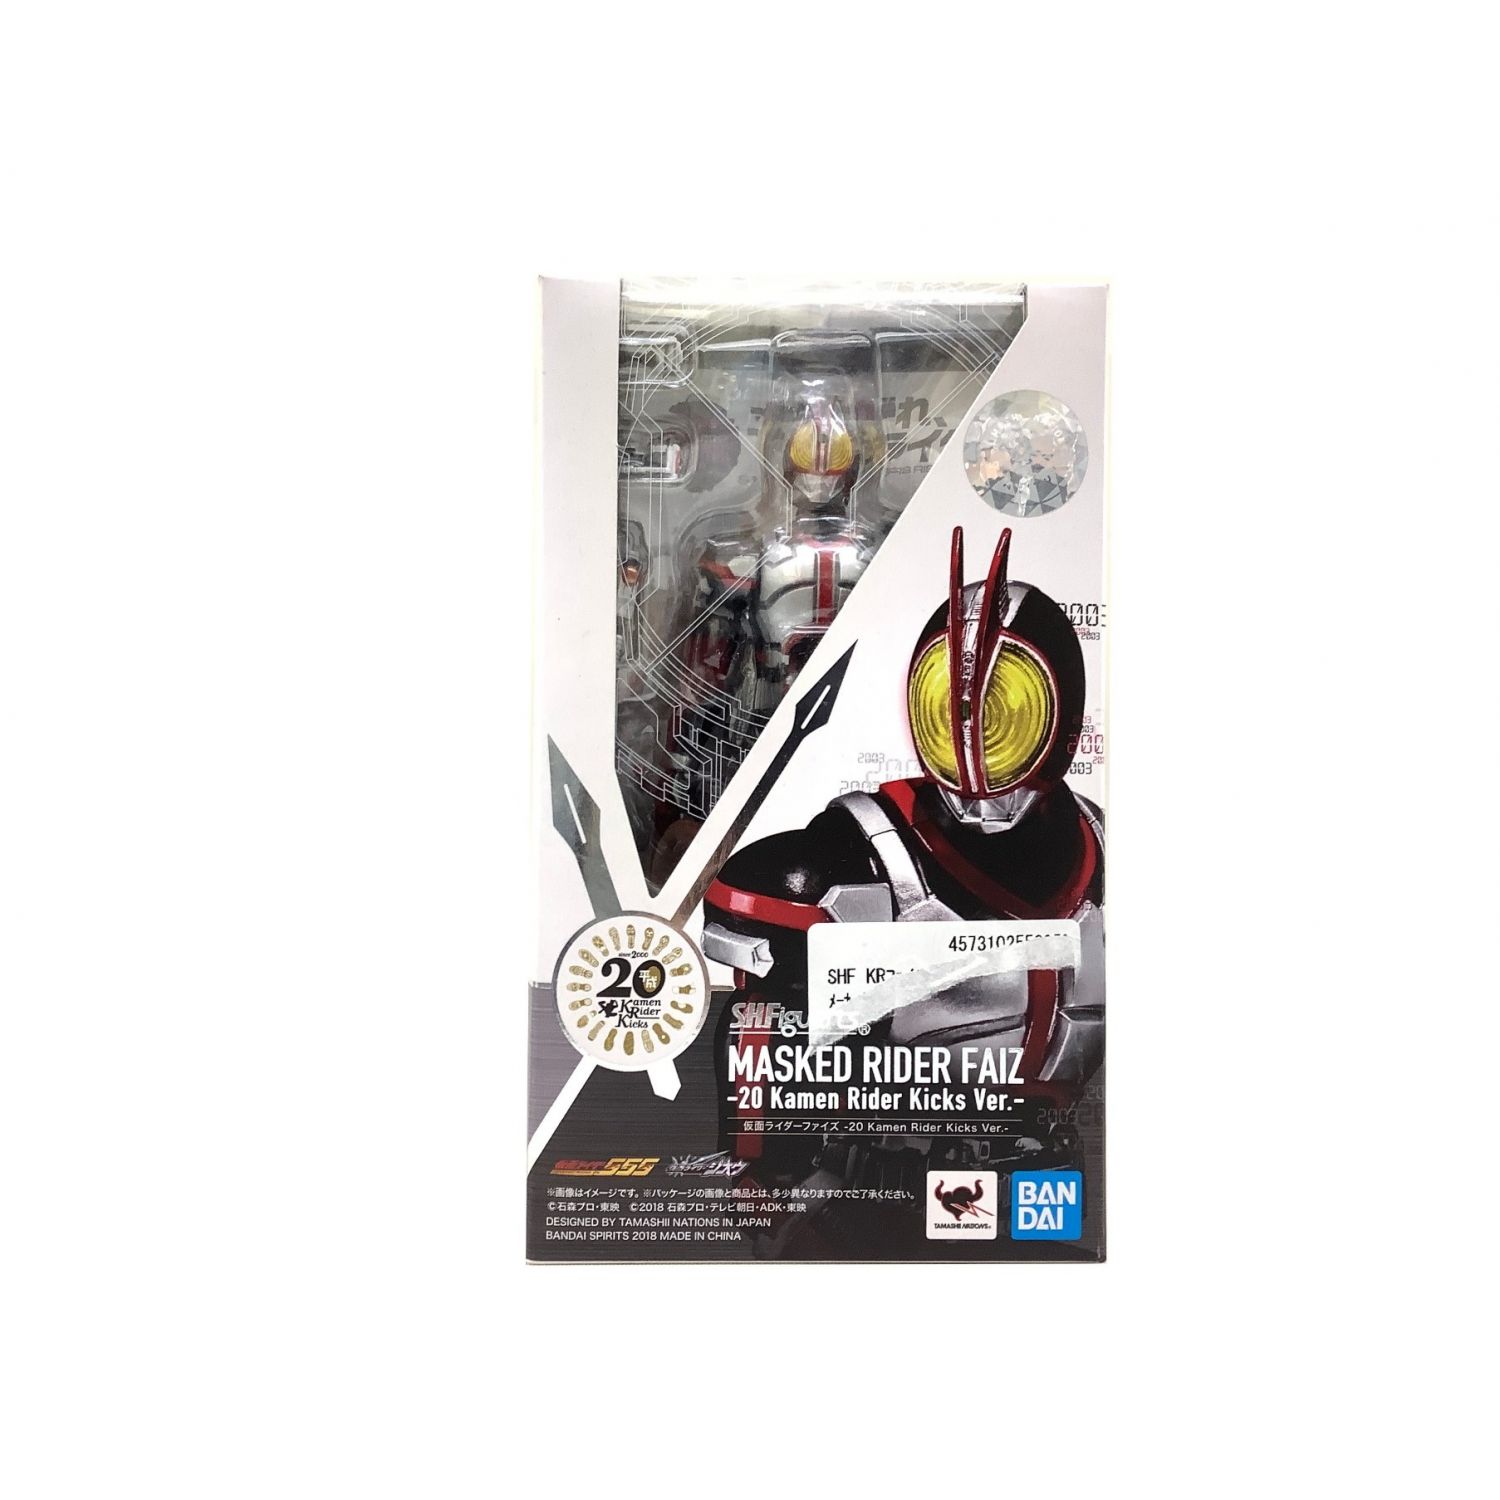 仮面ライダー555 ファイズ カメンライダーファイズ フィギュア ライドウォッチ型台座で飾れる仮面ライダー555のフィギュア トレファクonline